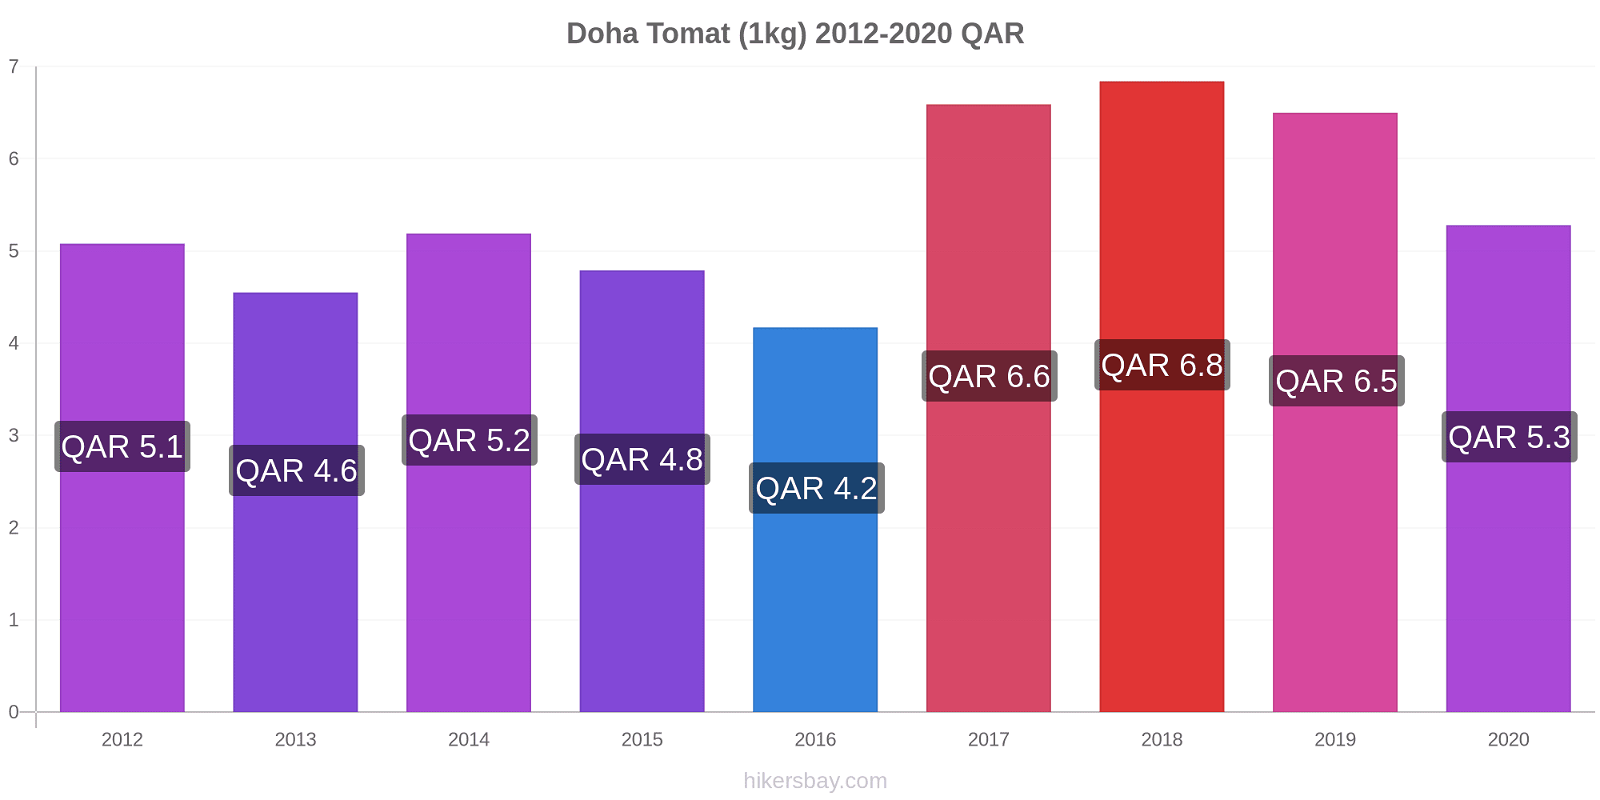 Doha prisændringer Tomat (1kg) hikersbay.com